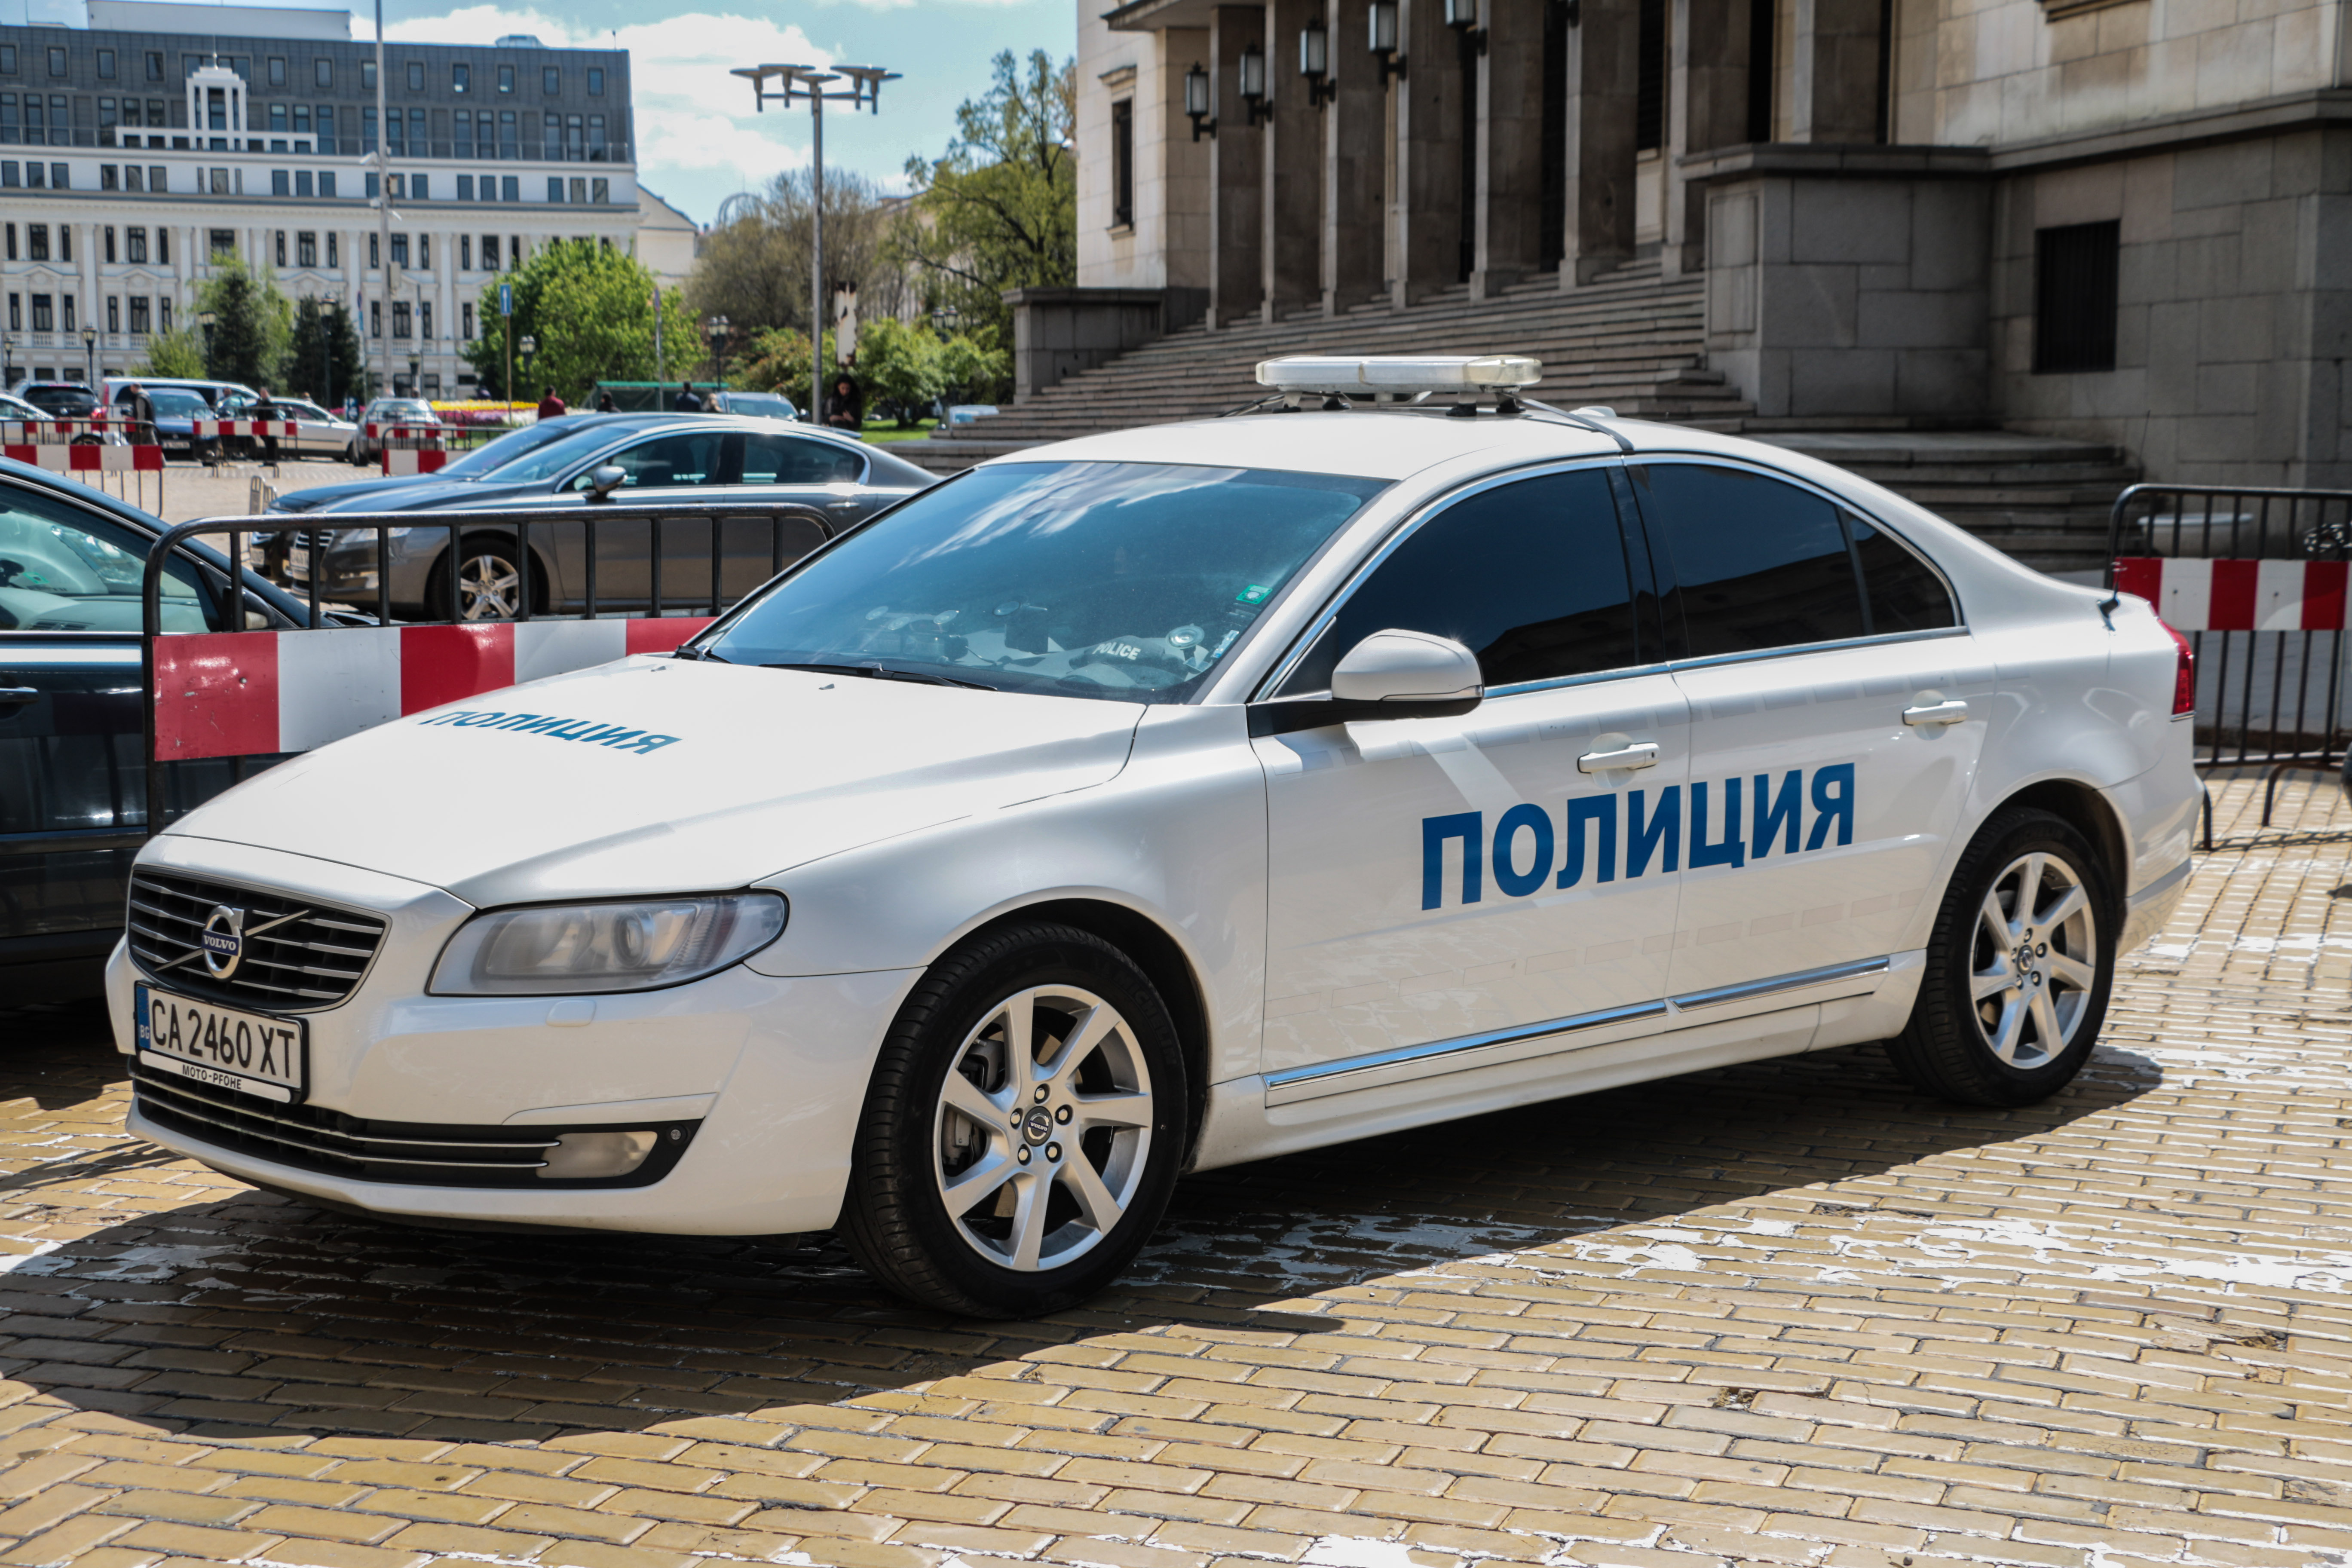 СДВР съобщи за множество пътни инциденти в София